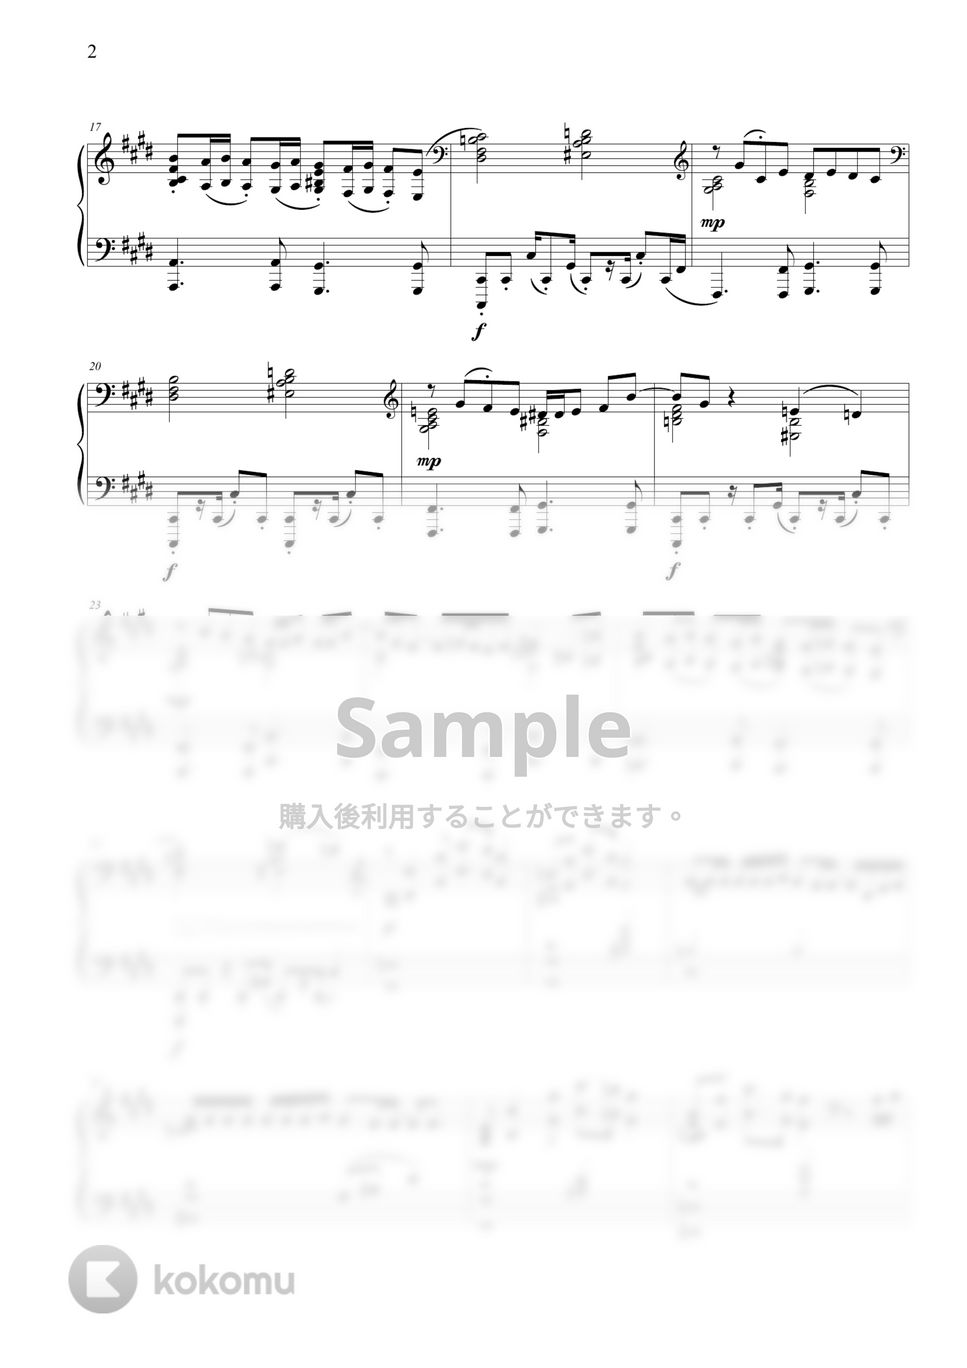 藤井風 - Matsuri by THIS IS PIANO